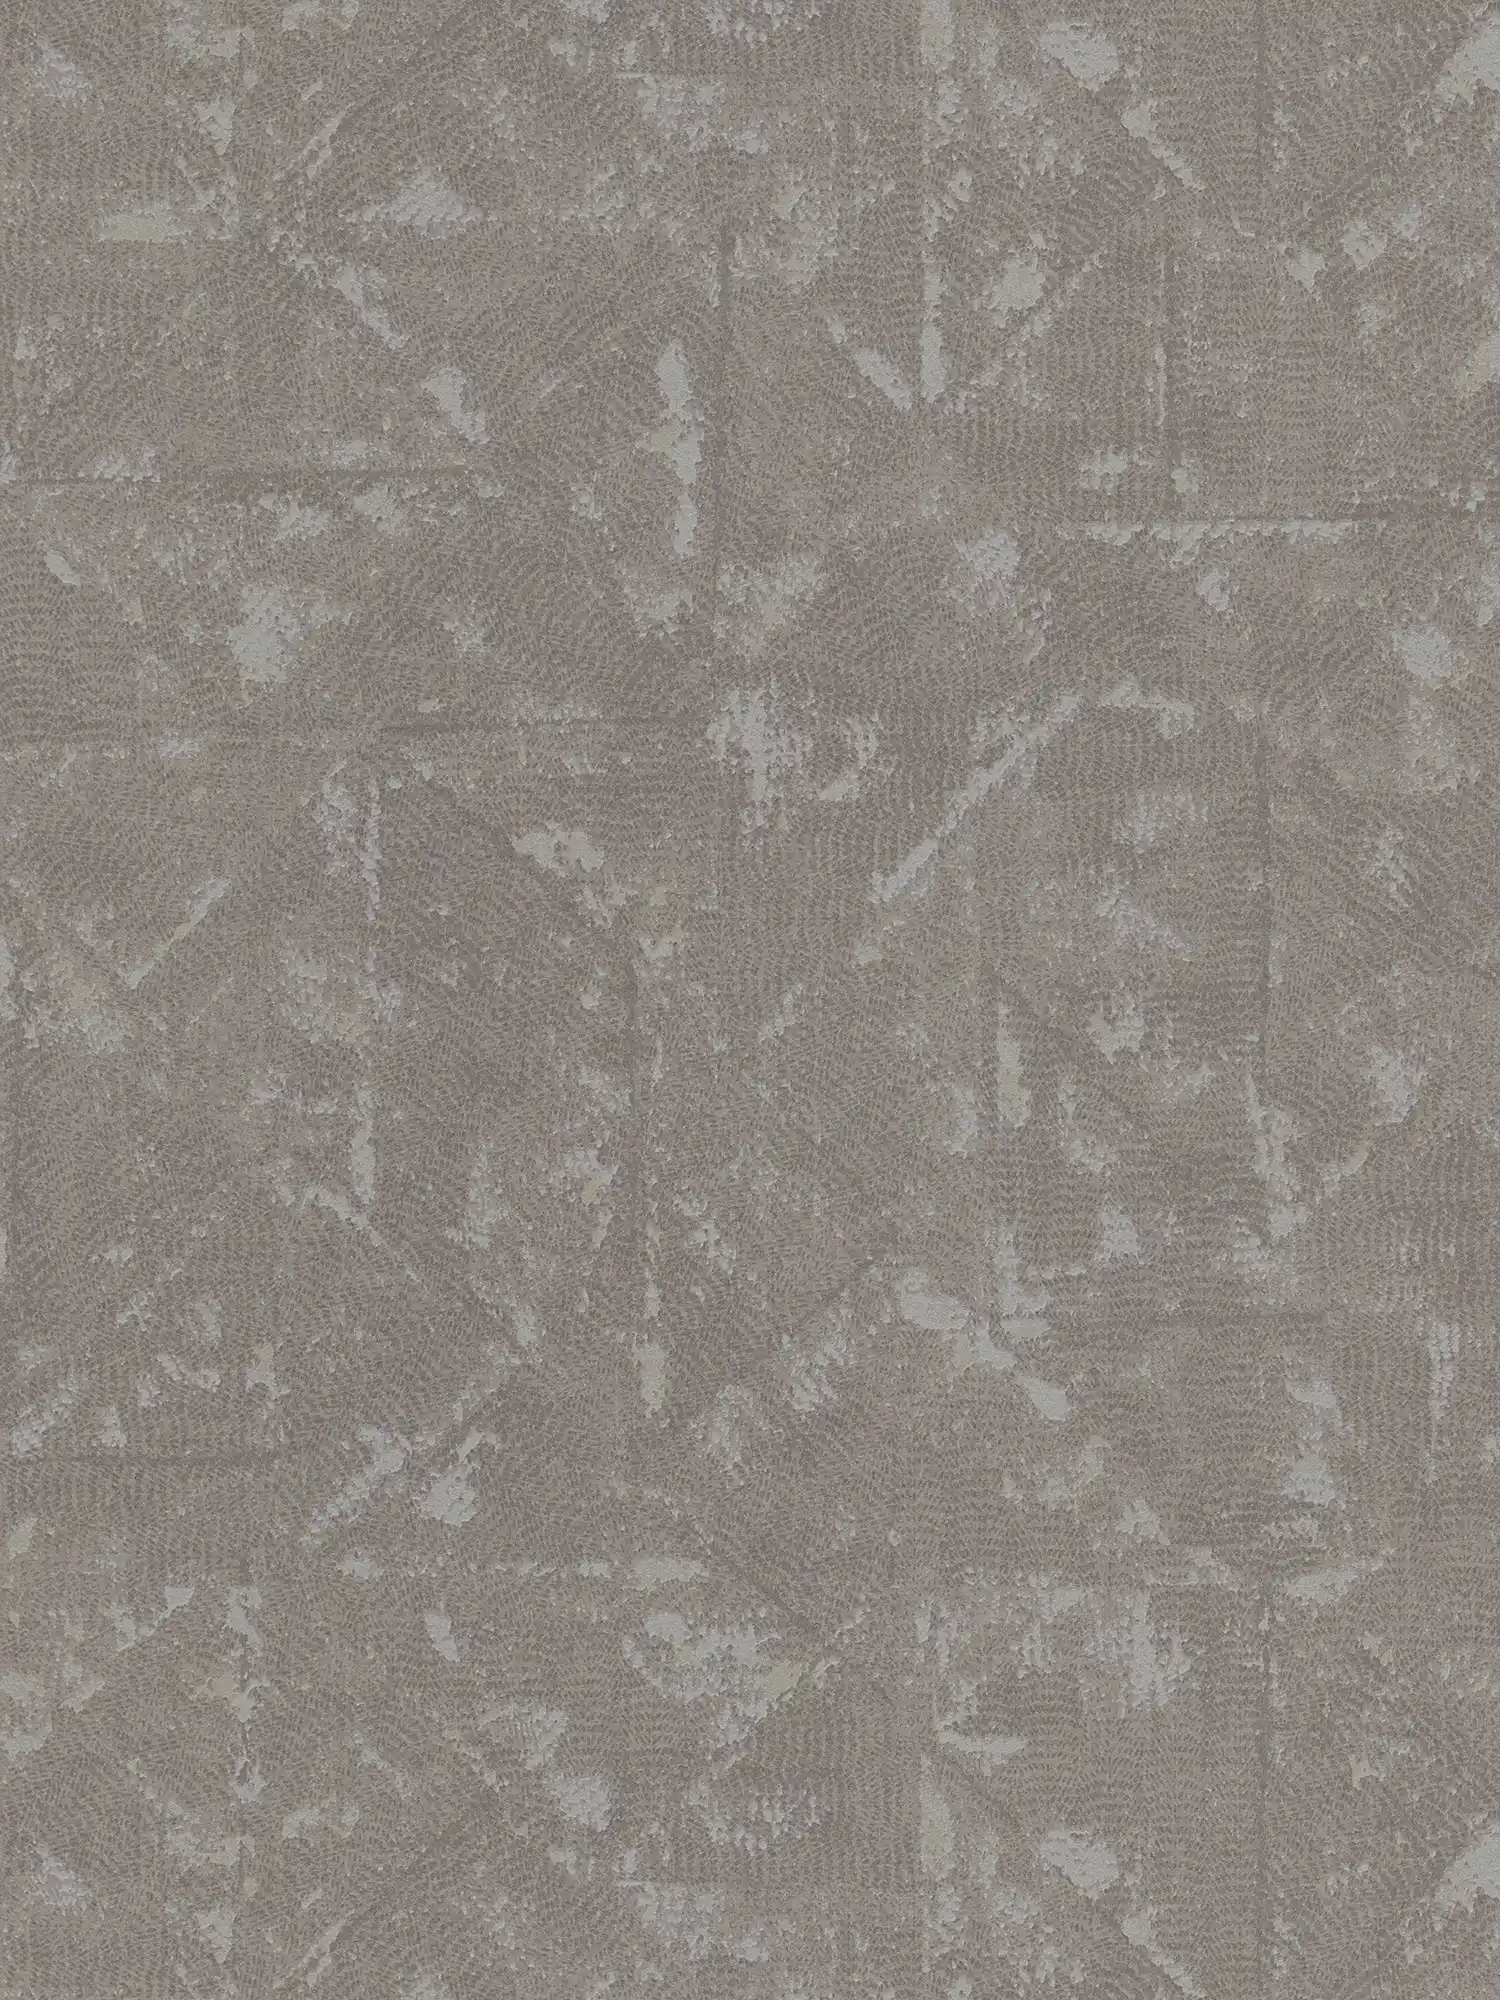 Plain non-woven wallpaper in grey, asymmetrical details - grey, silver
